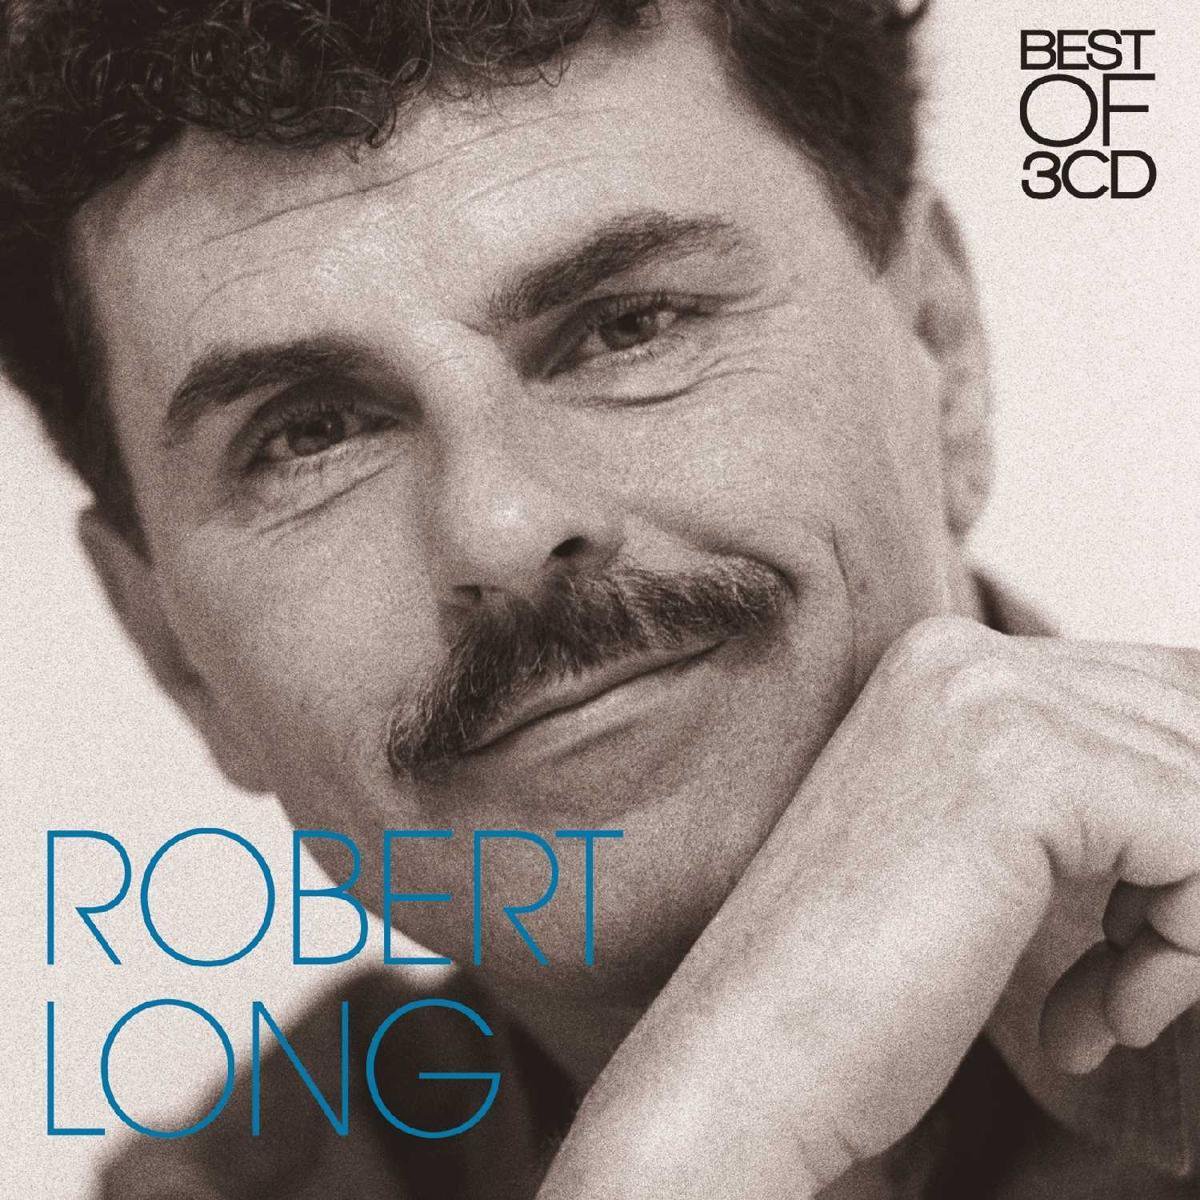 Best of 3Cd - Robert Long